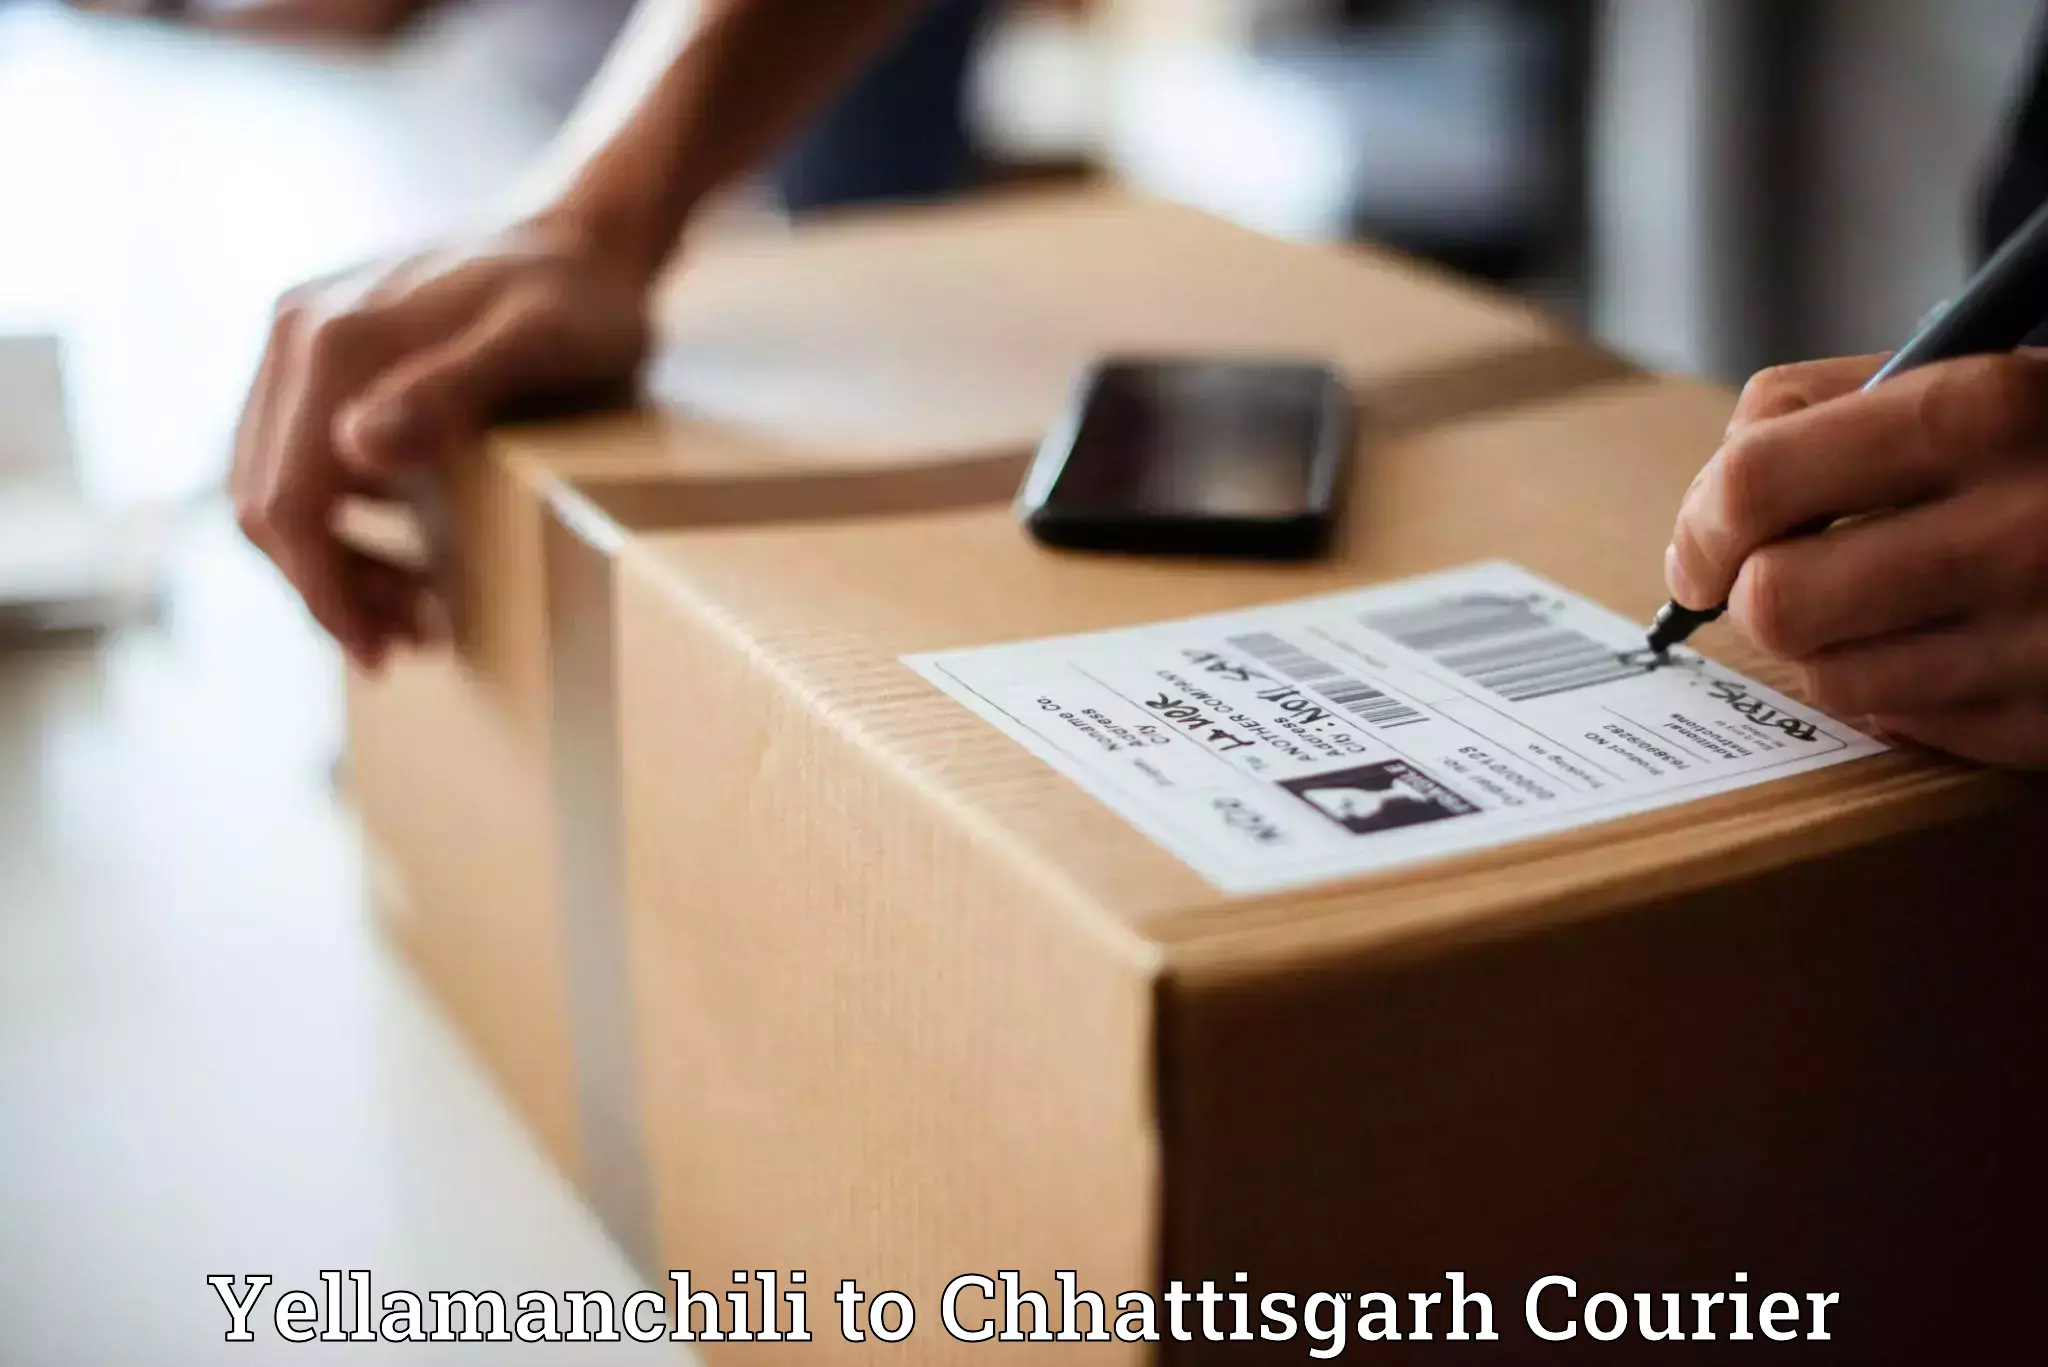 Reliable courier service Yellamanchili to Chhattisgarh